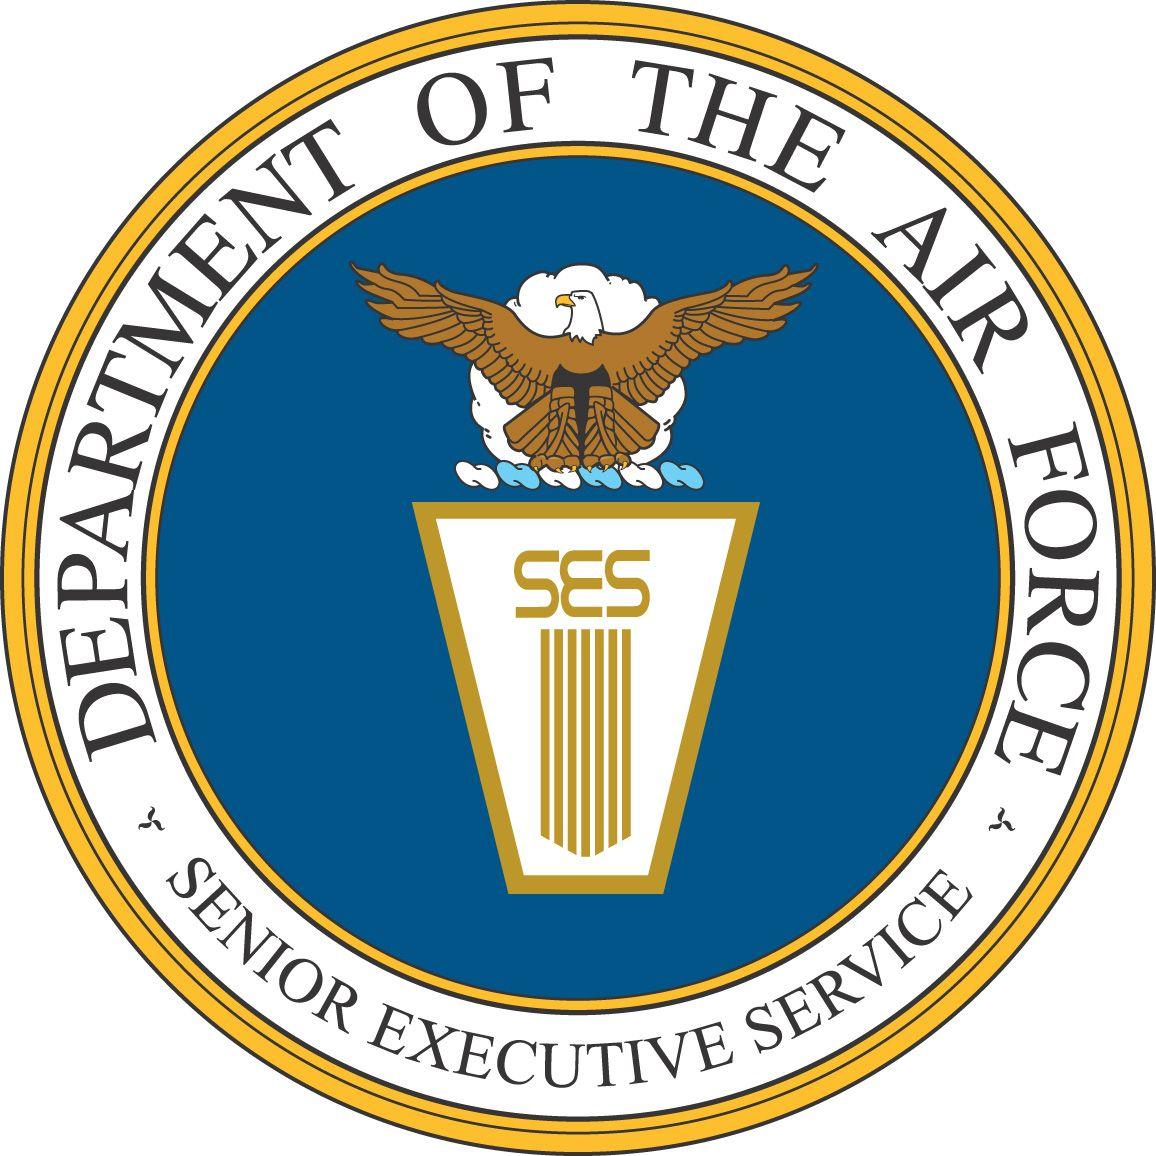 Executive Service Logo - Senior Executive Service, Department of the Air